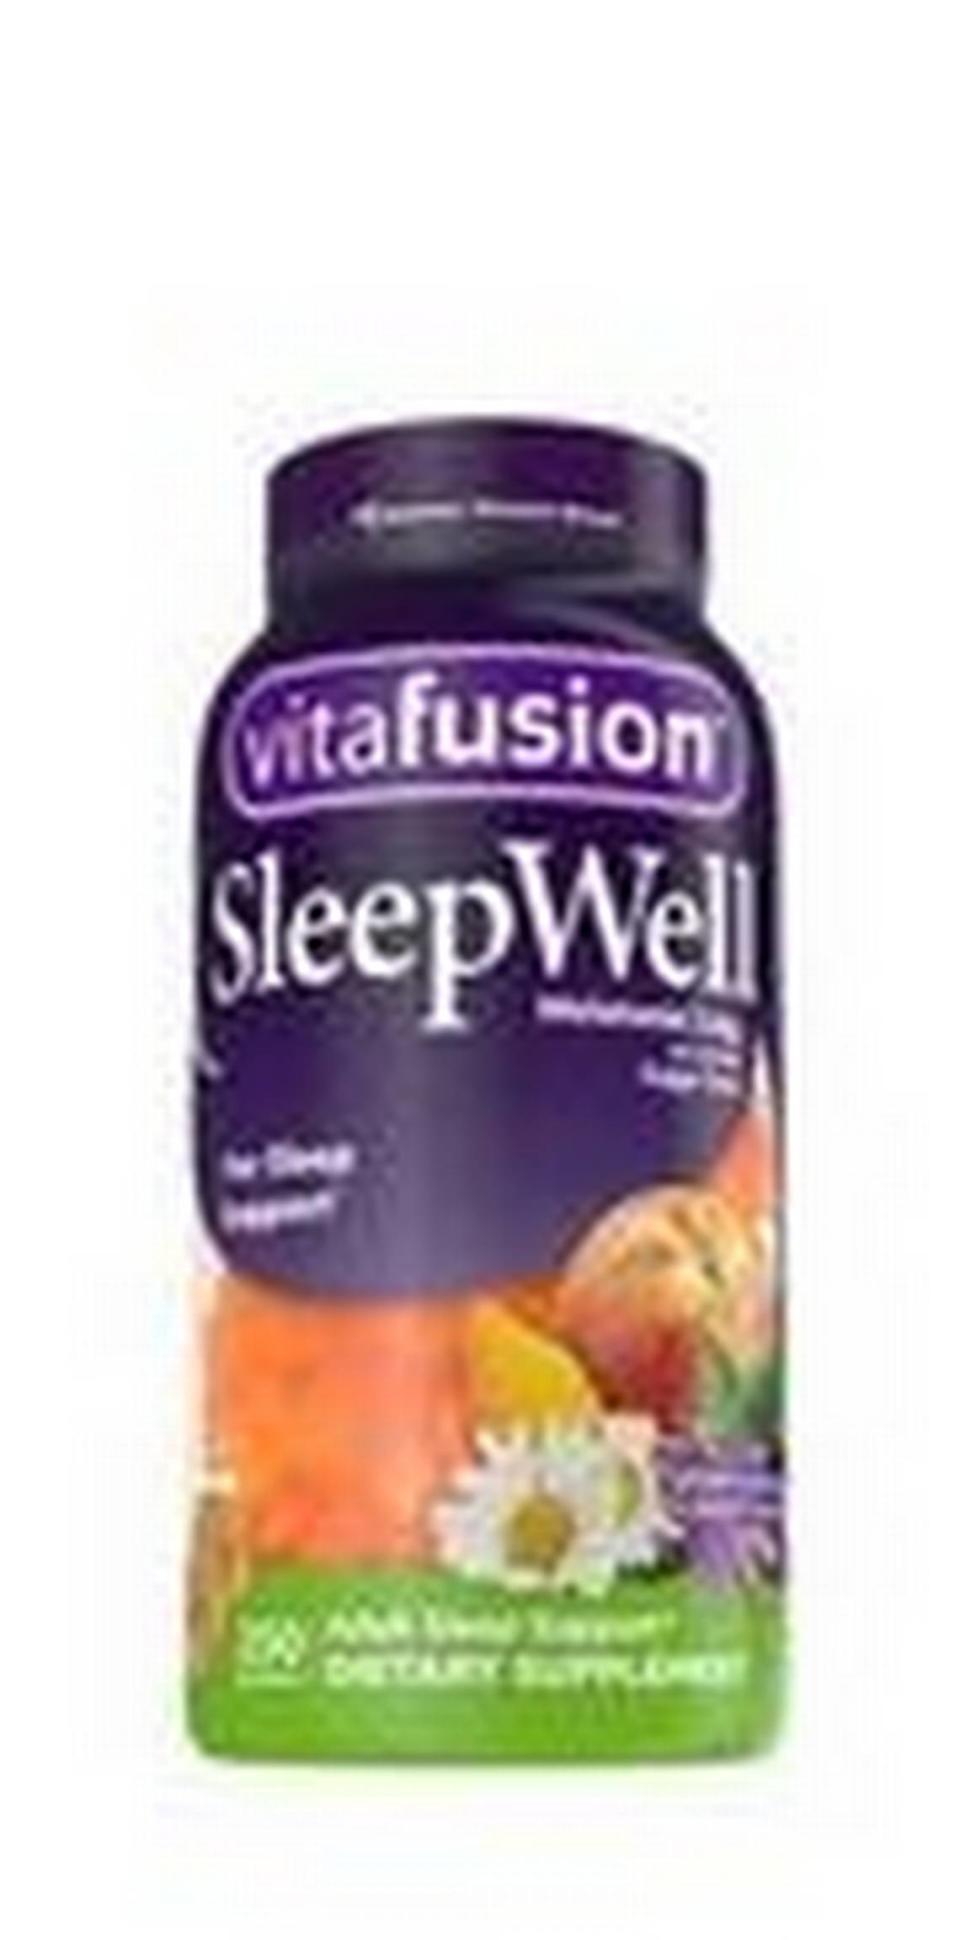 vitaFusion SleepWell vitamins